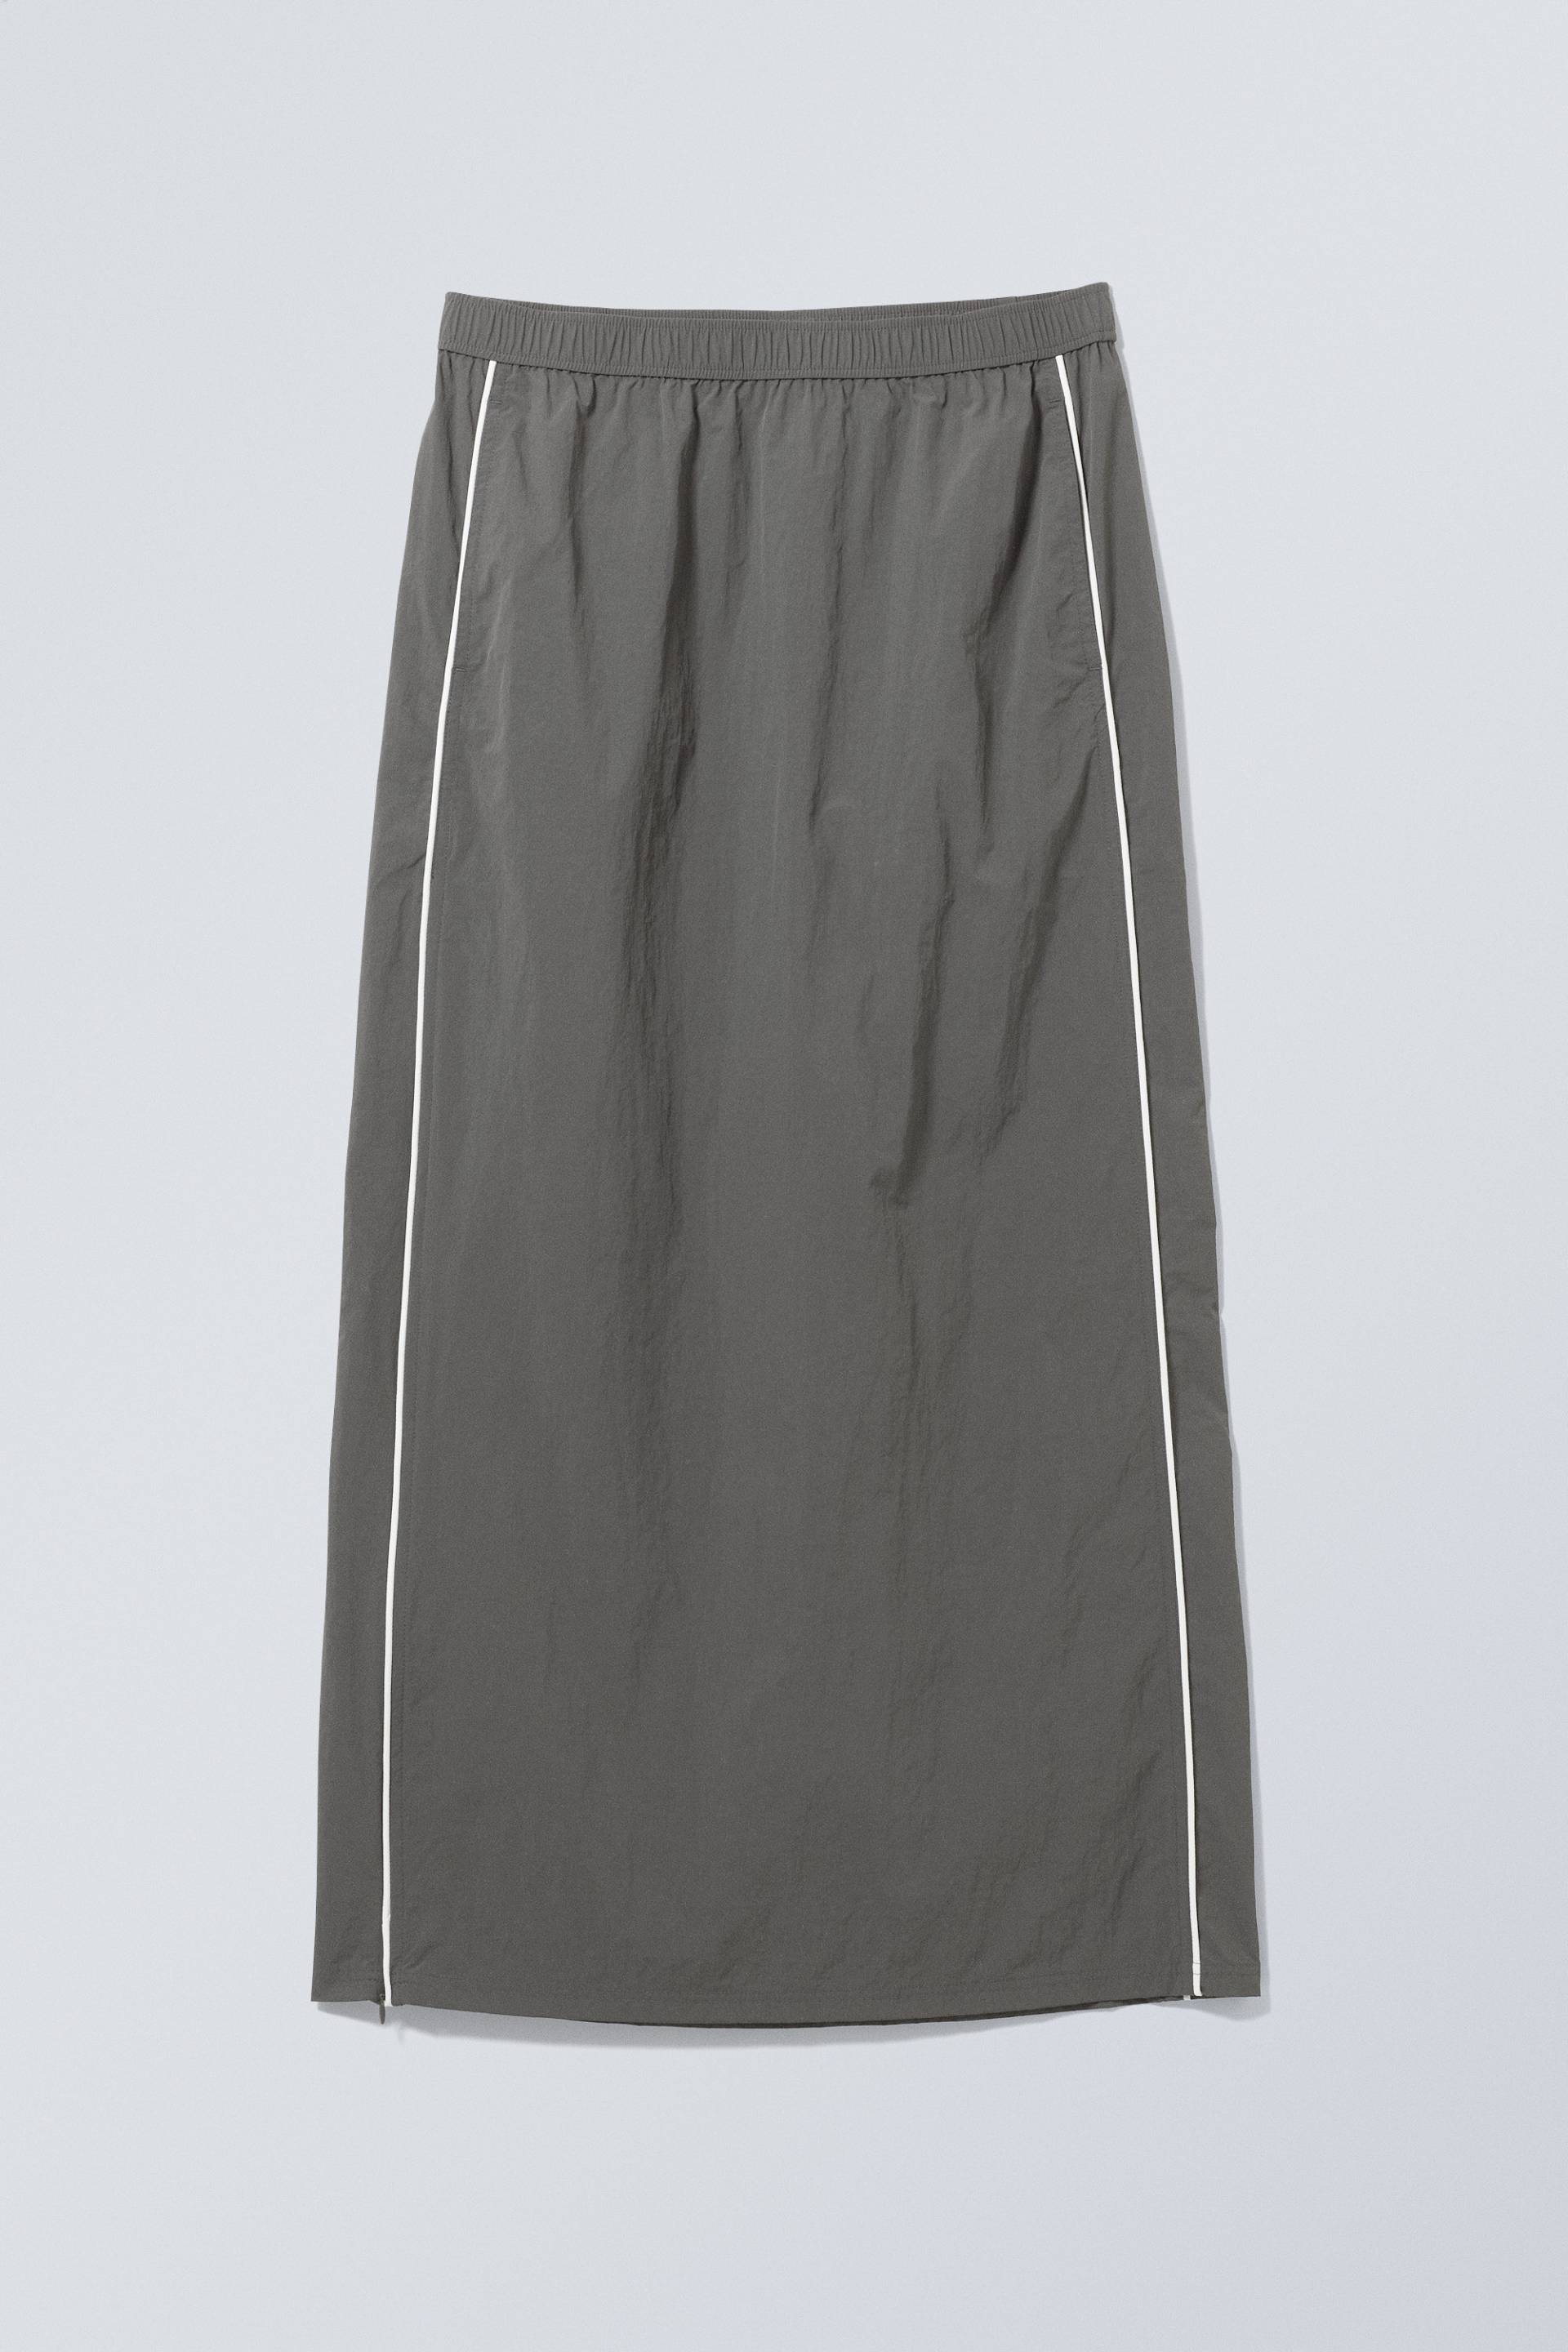 Weekday Trainingsanzug-Rock Daria Dunkelgrau, Röcke in Größe S. Farbe: Dark grey von Weekday